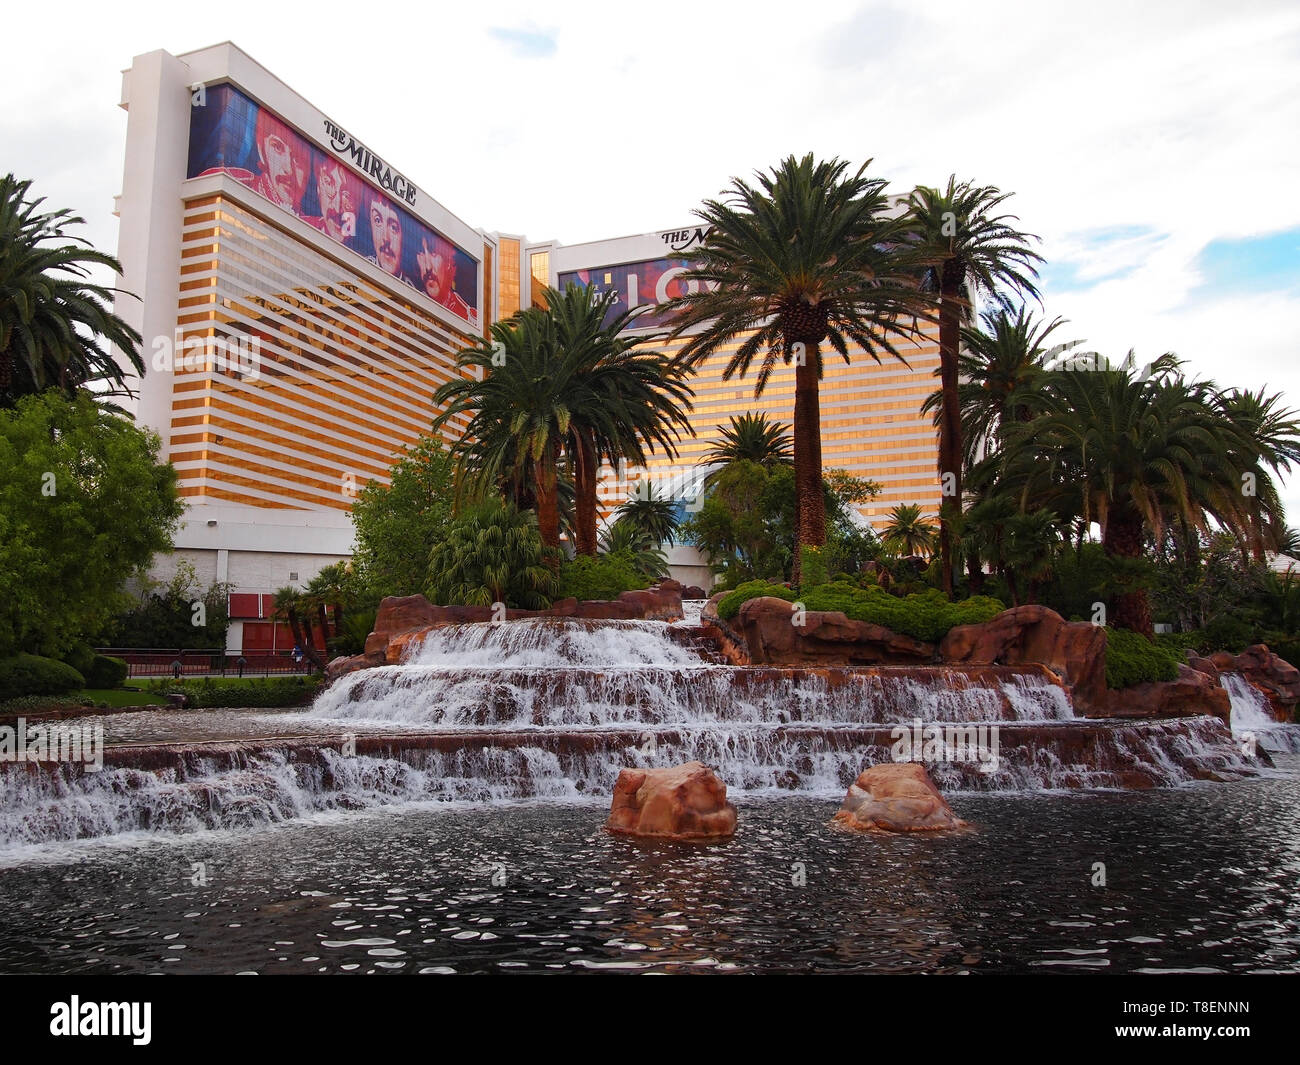 LAS VEGAS, NV - Juli 21, 2018: Der Las Vegas Boulevard mit Blick auf äußere des beliebten Polynesischen themed Mirage Hotel und Casino in Las Vegas, Nevada. Stockfoto